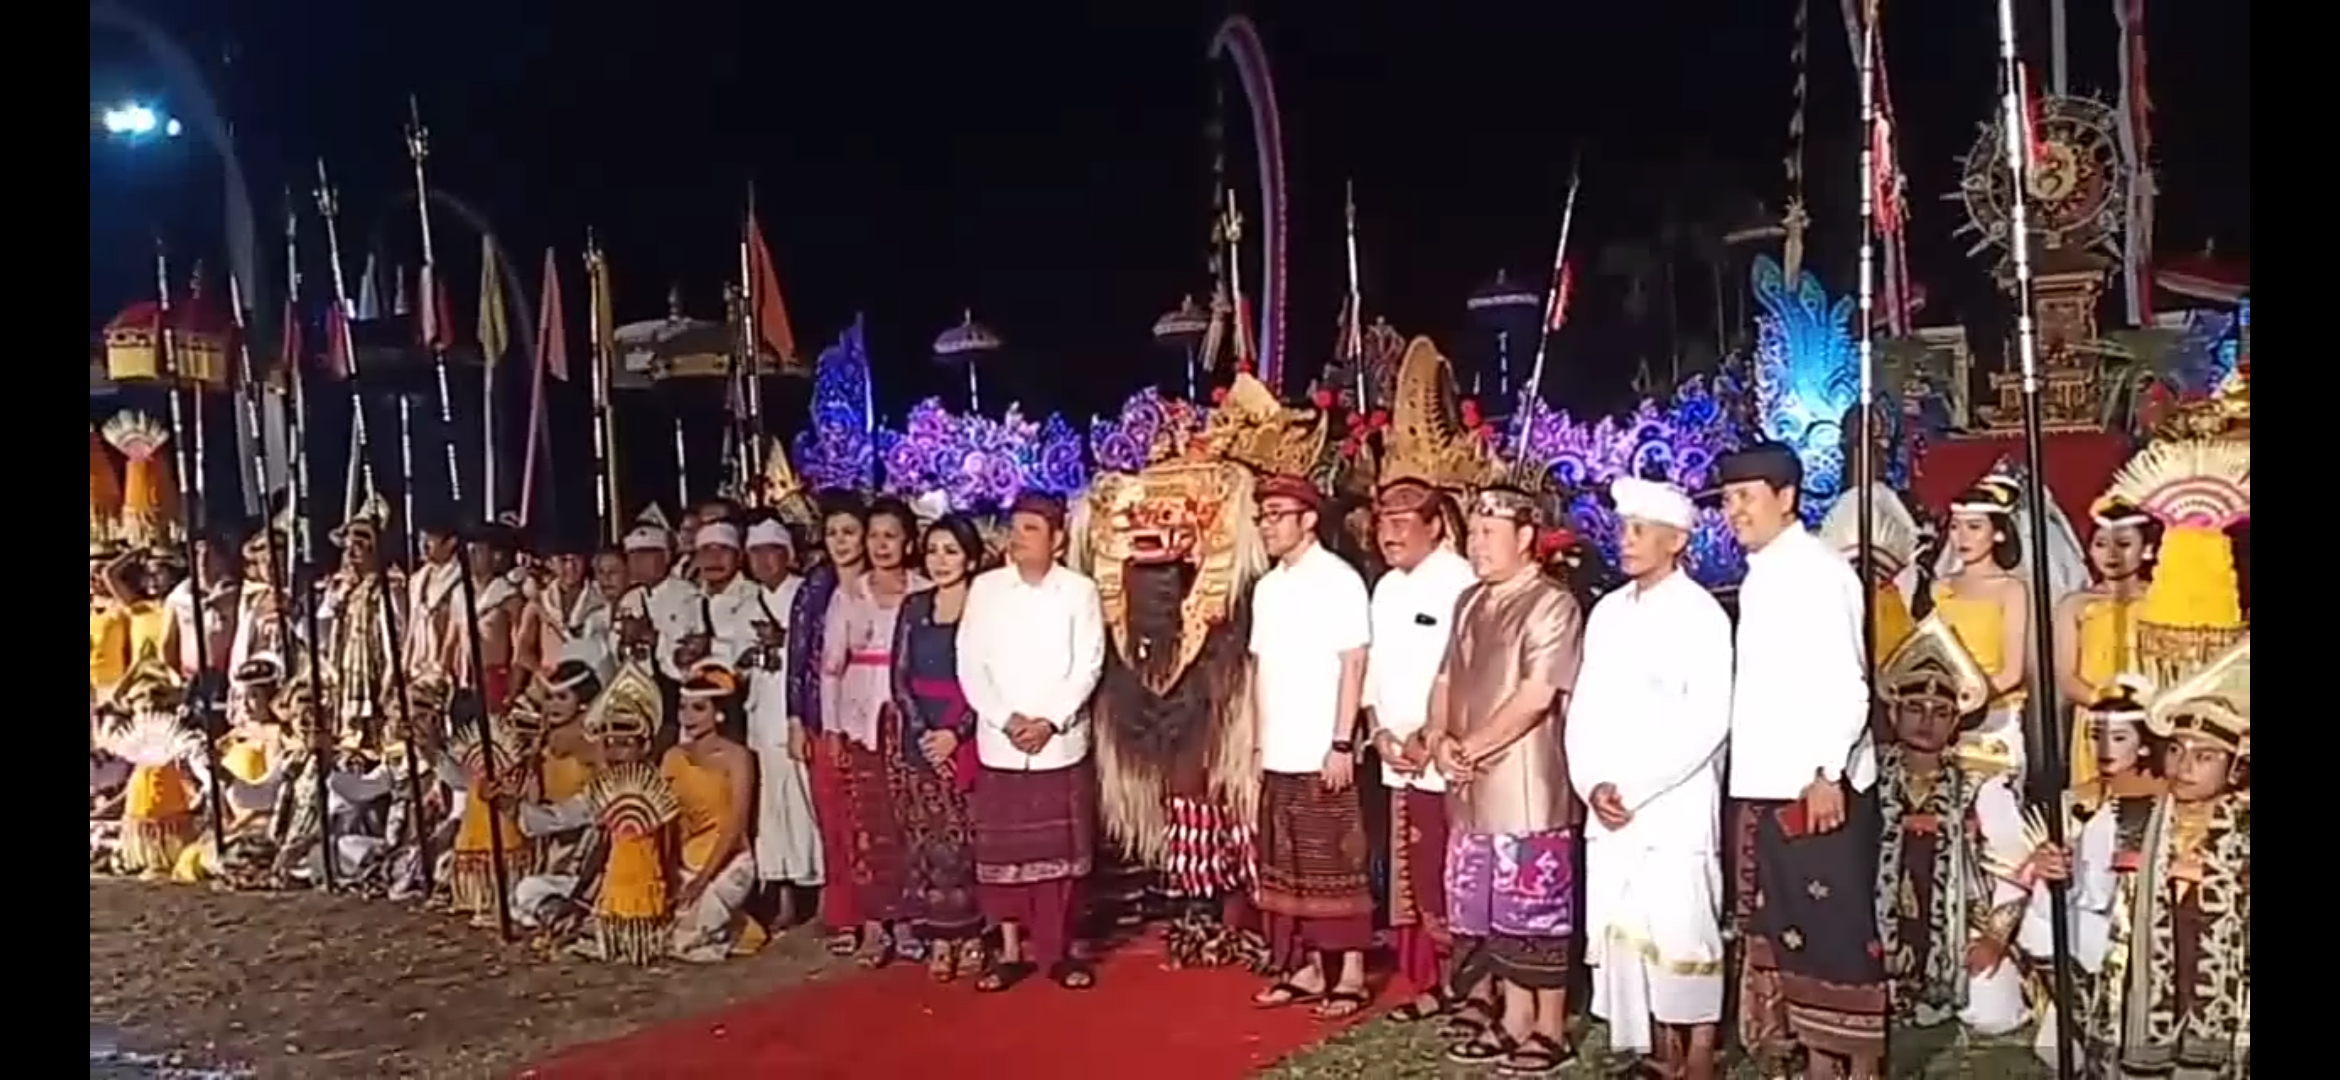 Pembukaan Maha Bandana Prasadha beserta Parade Gong Kebyar dan Kesenian Klasik tahun 2019